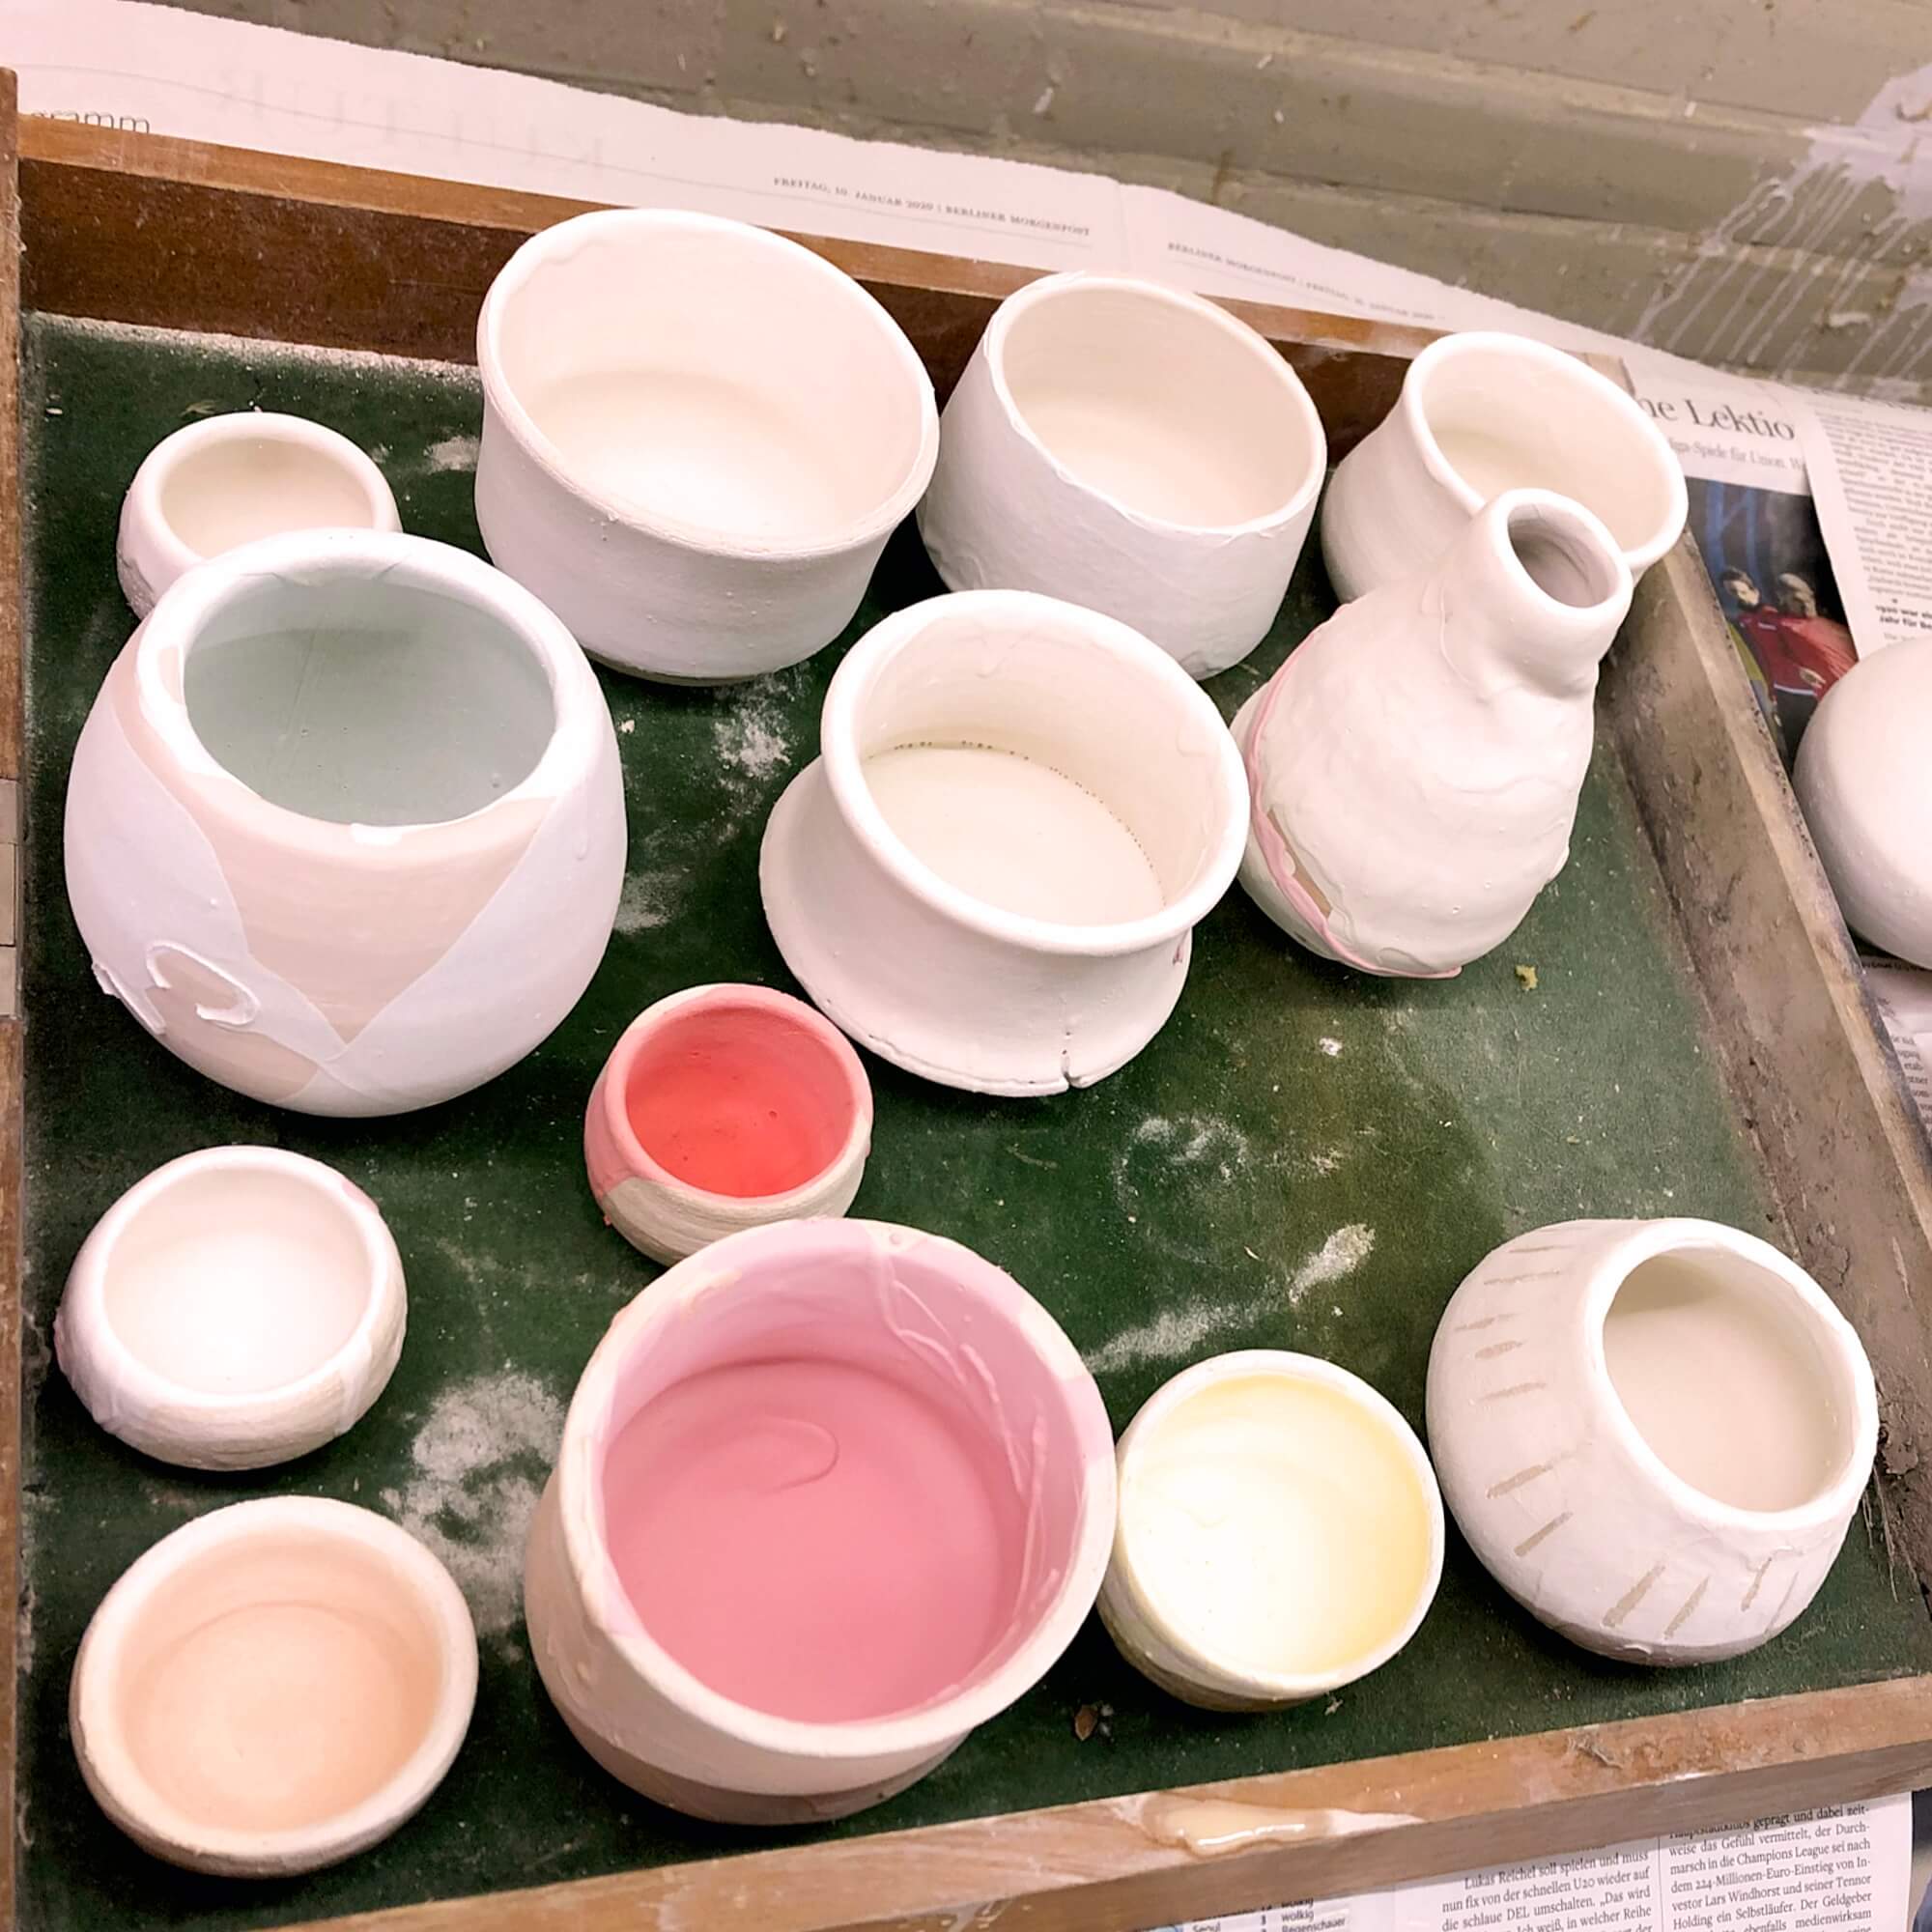 rohe Keramiken frisch glasiert - ungebrannt